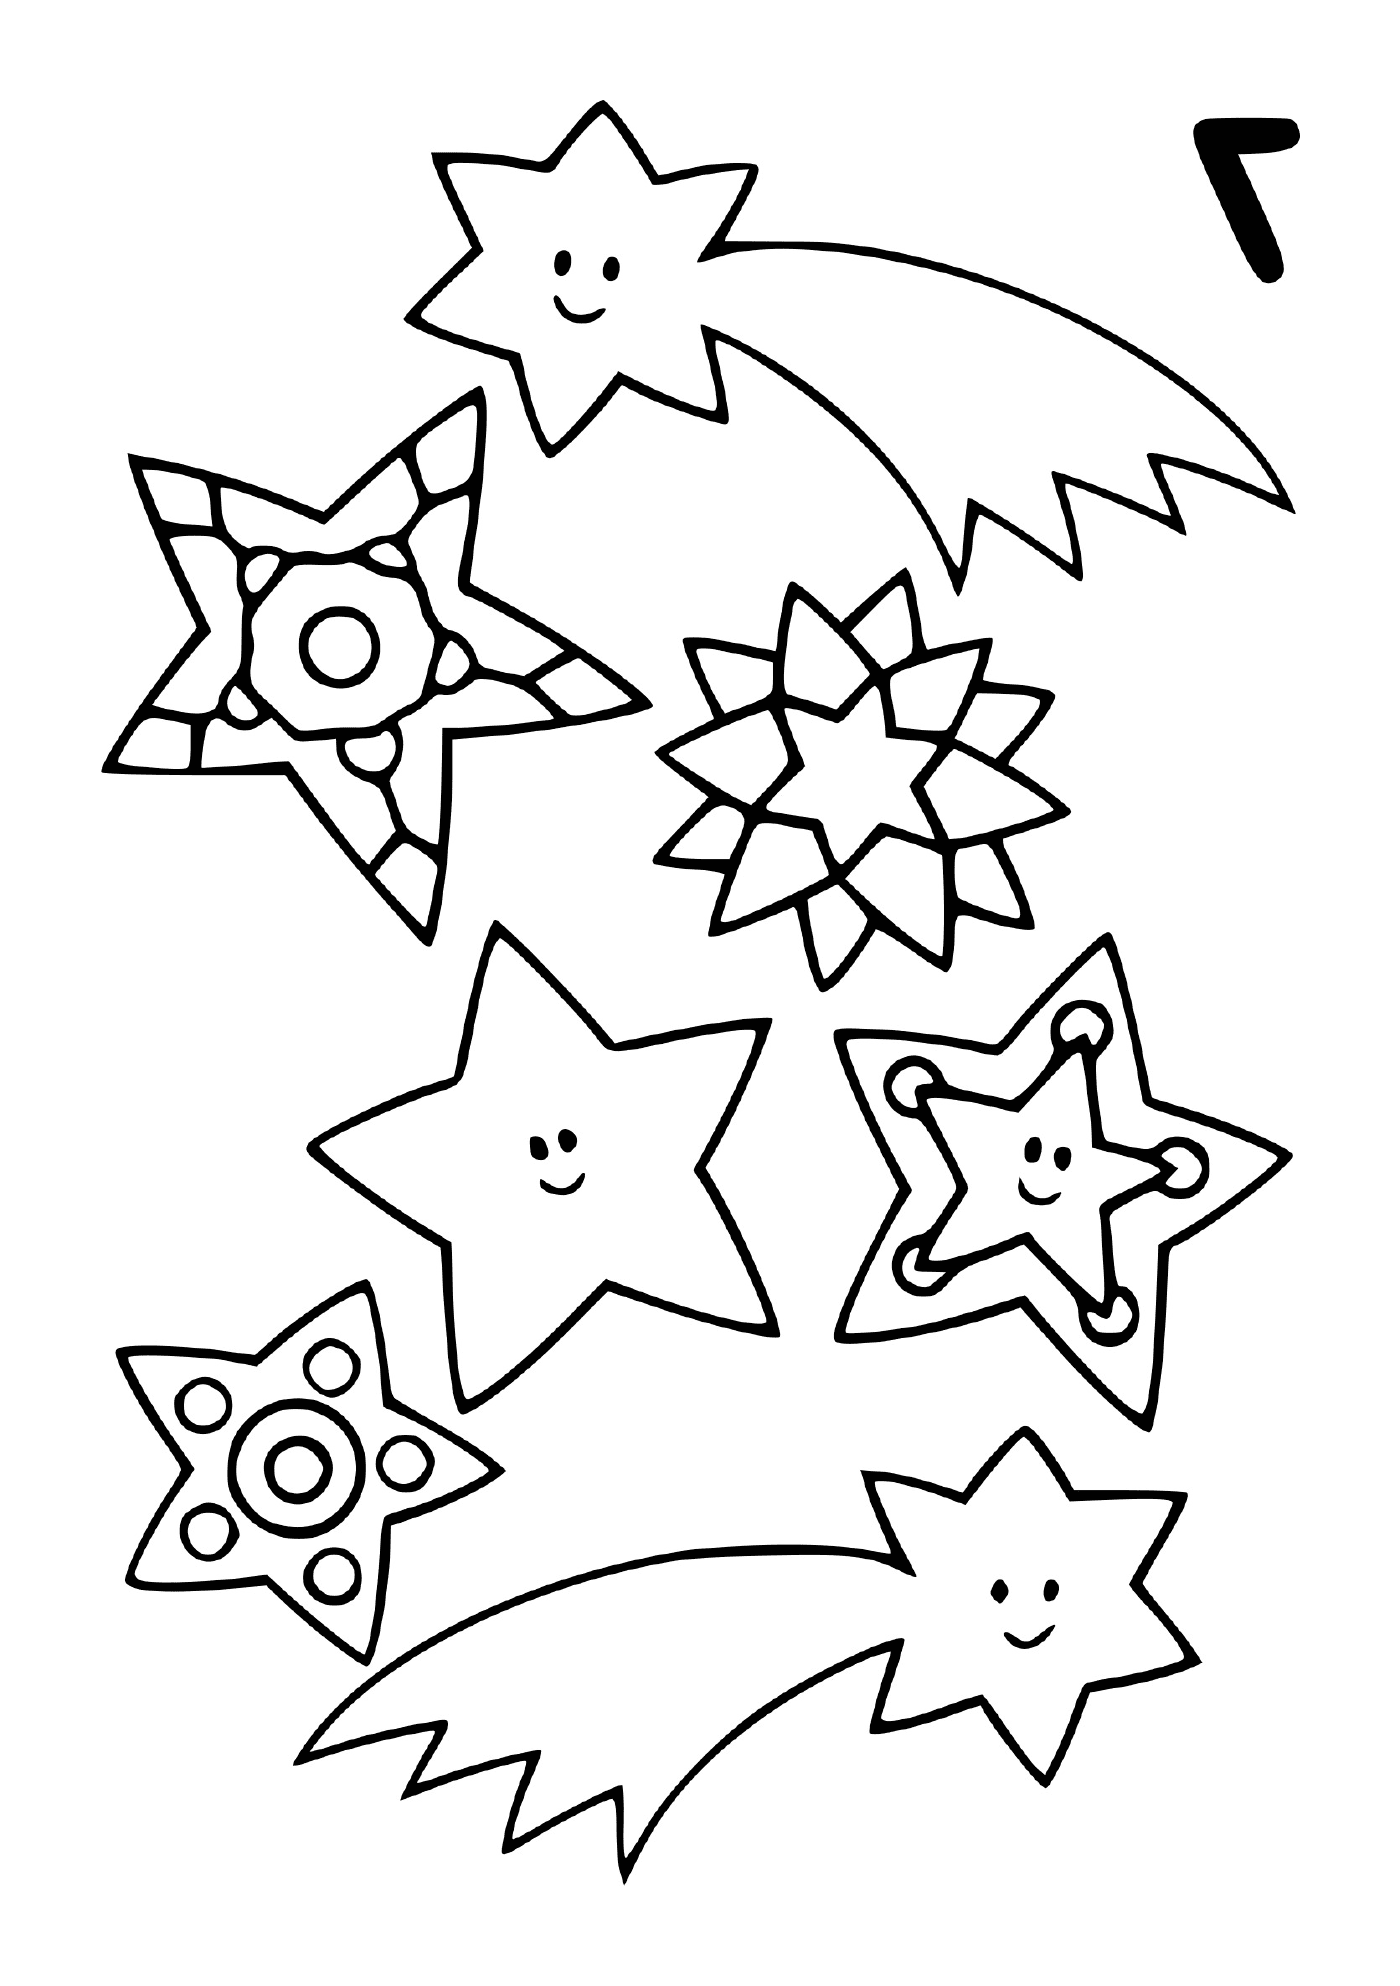   Un ensemble d'étoiles filantes dans différentes formes 